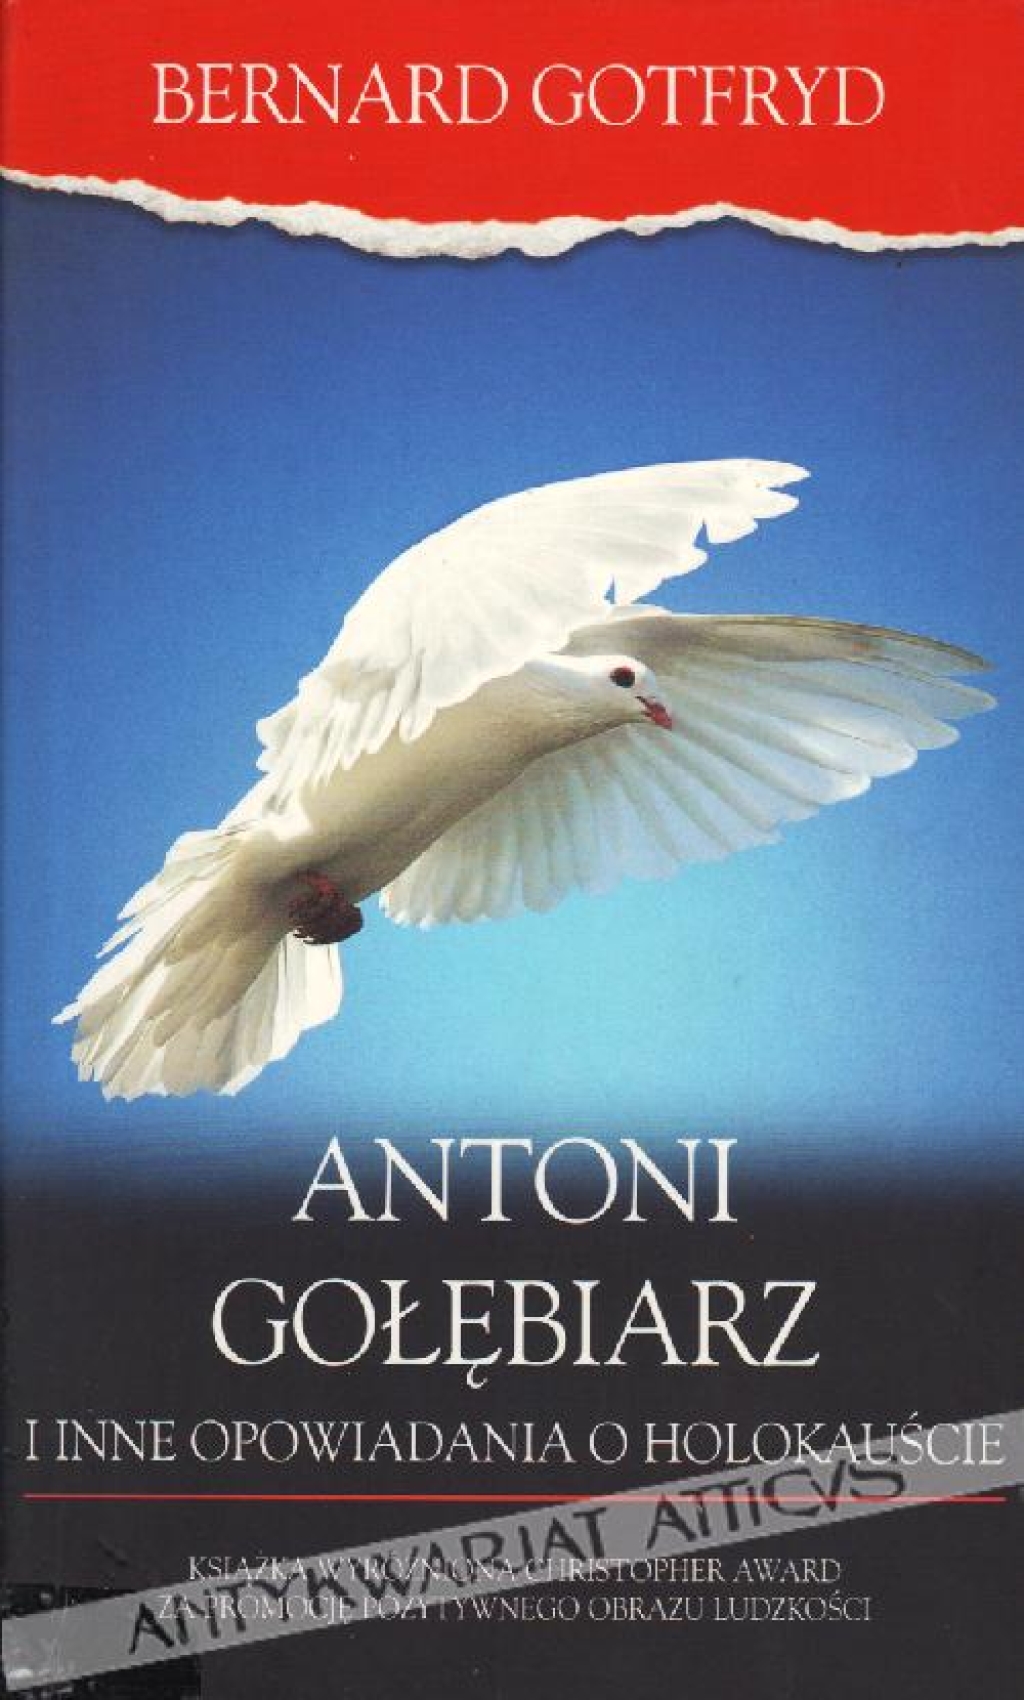 Antoni Gołębiarz i inne opowiadania o holokauście